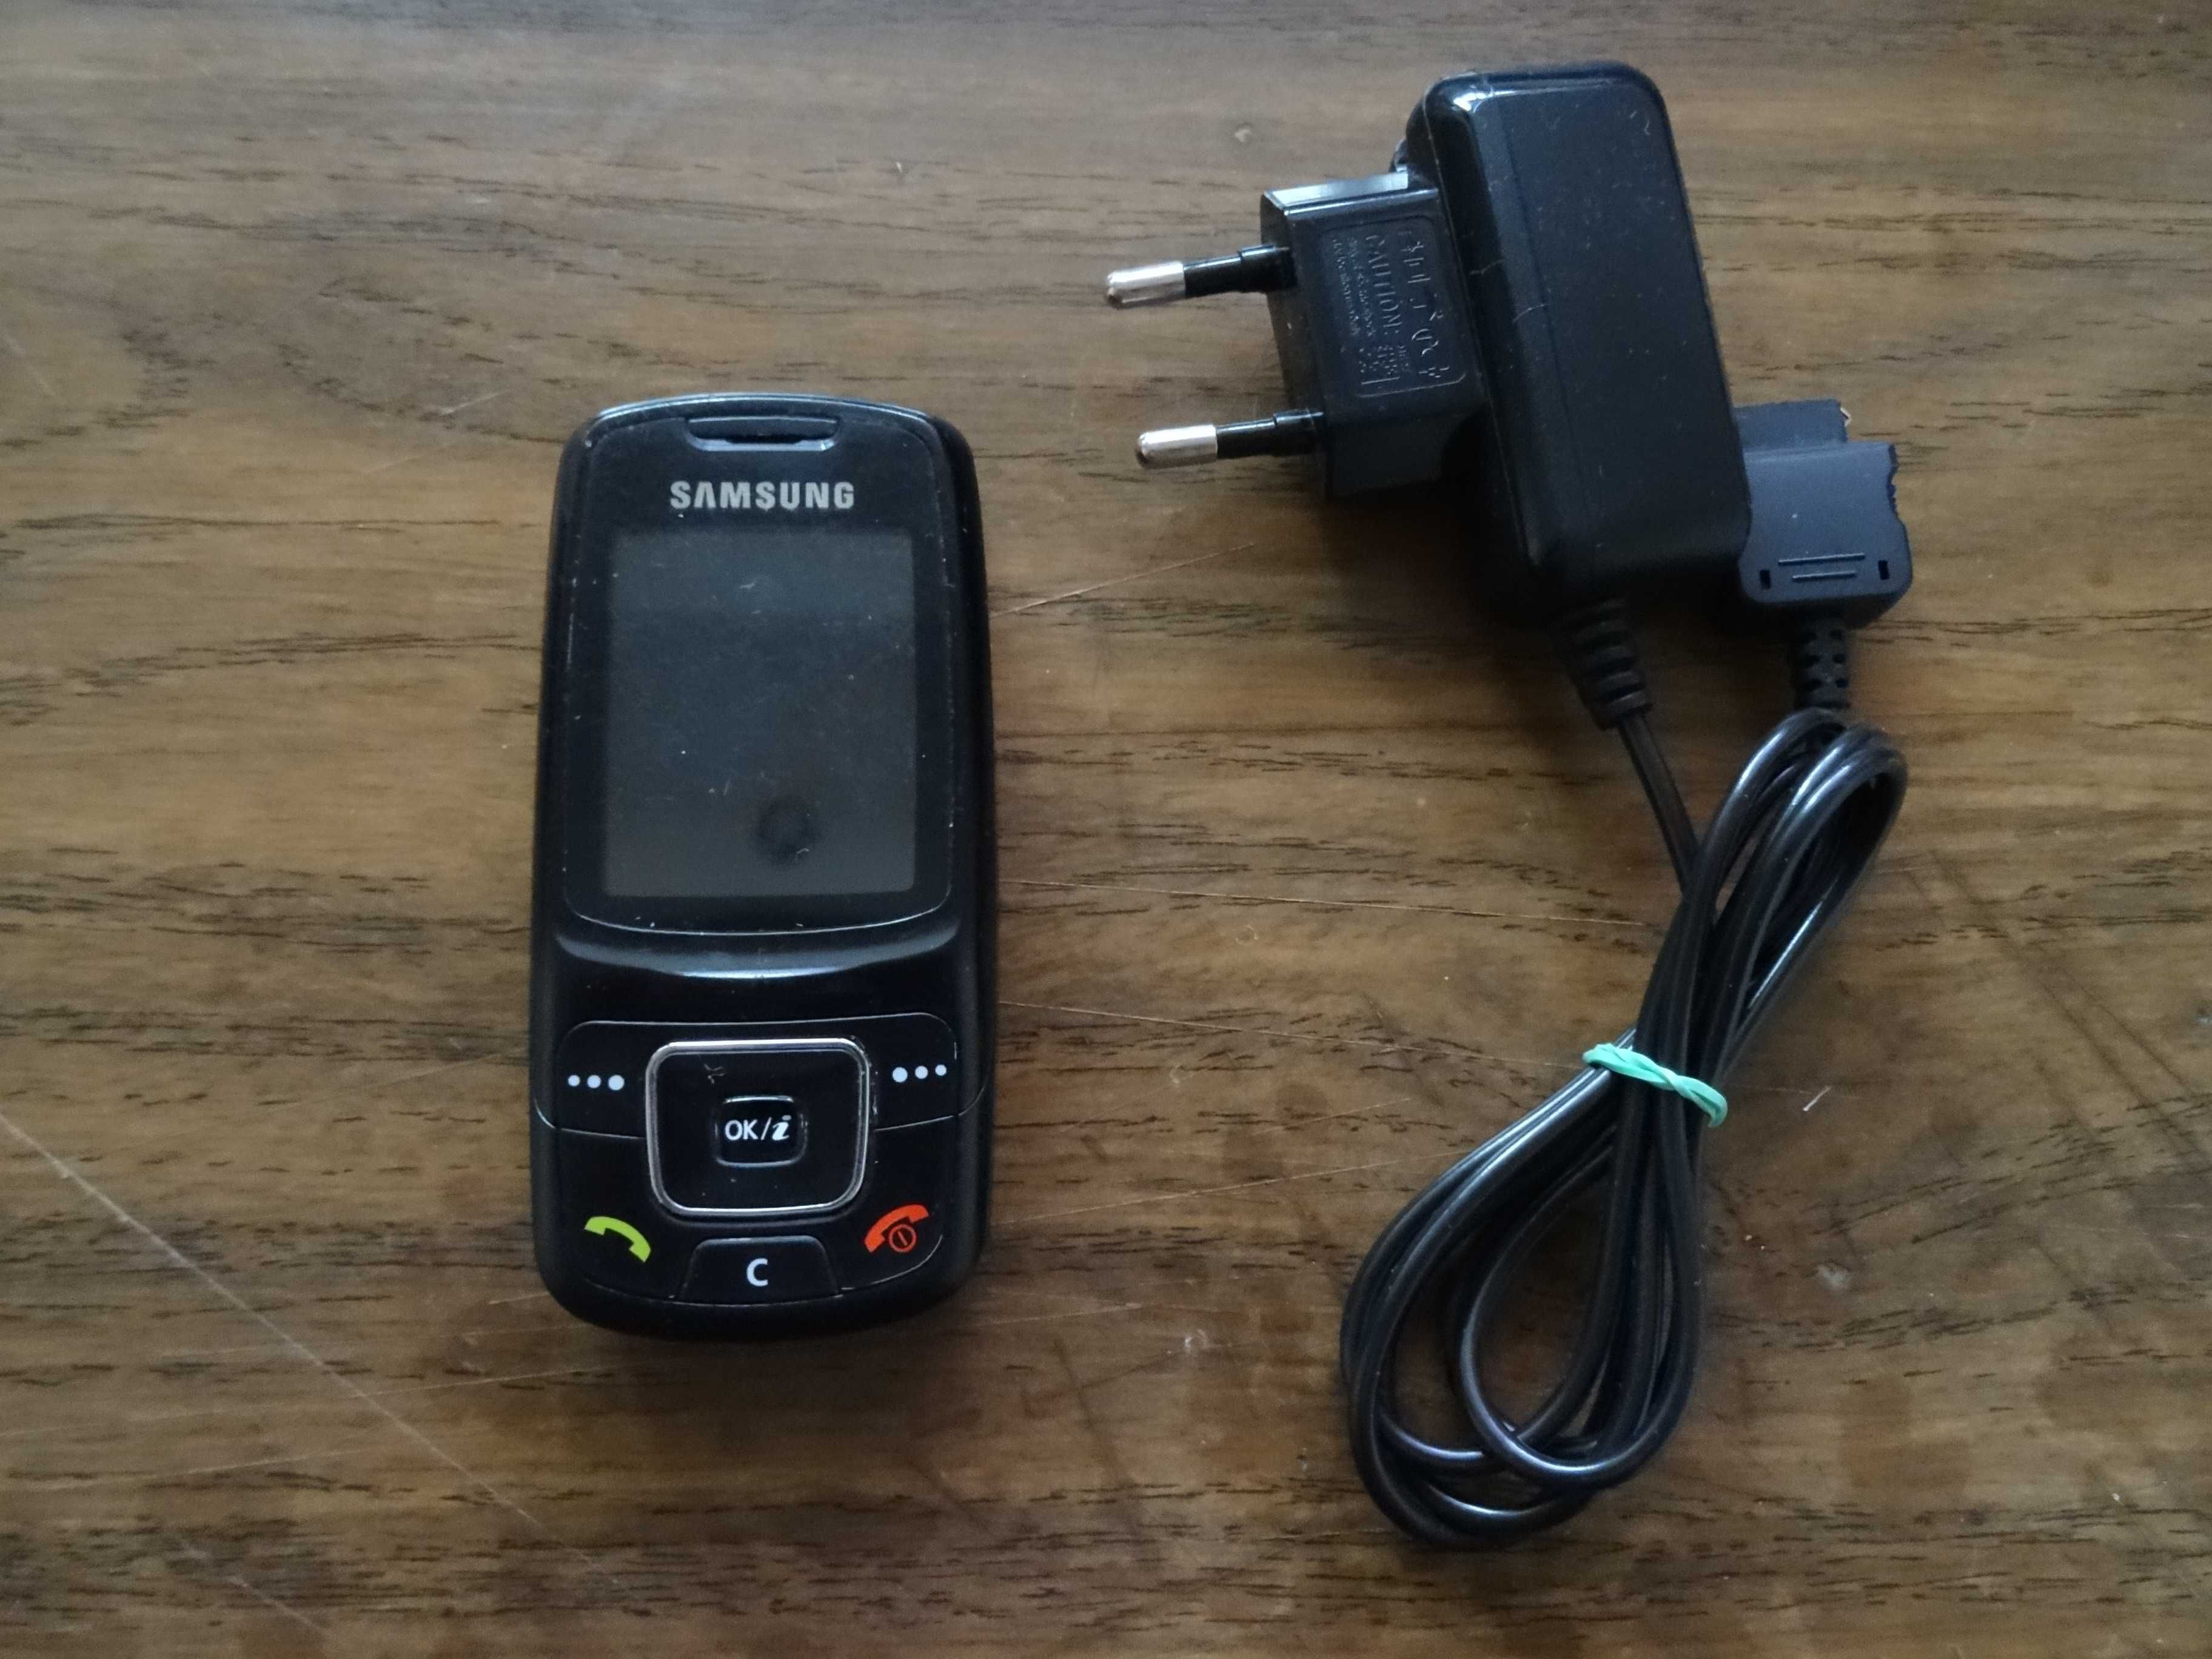 Мобильный телефон Samsung SGH-C300 в комплекте с зарядкой.